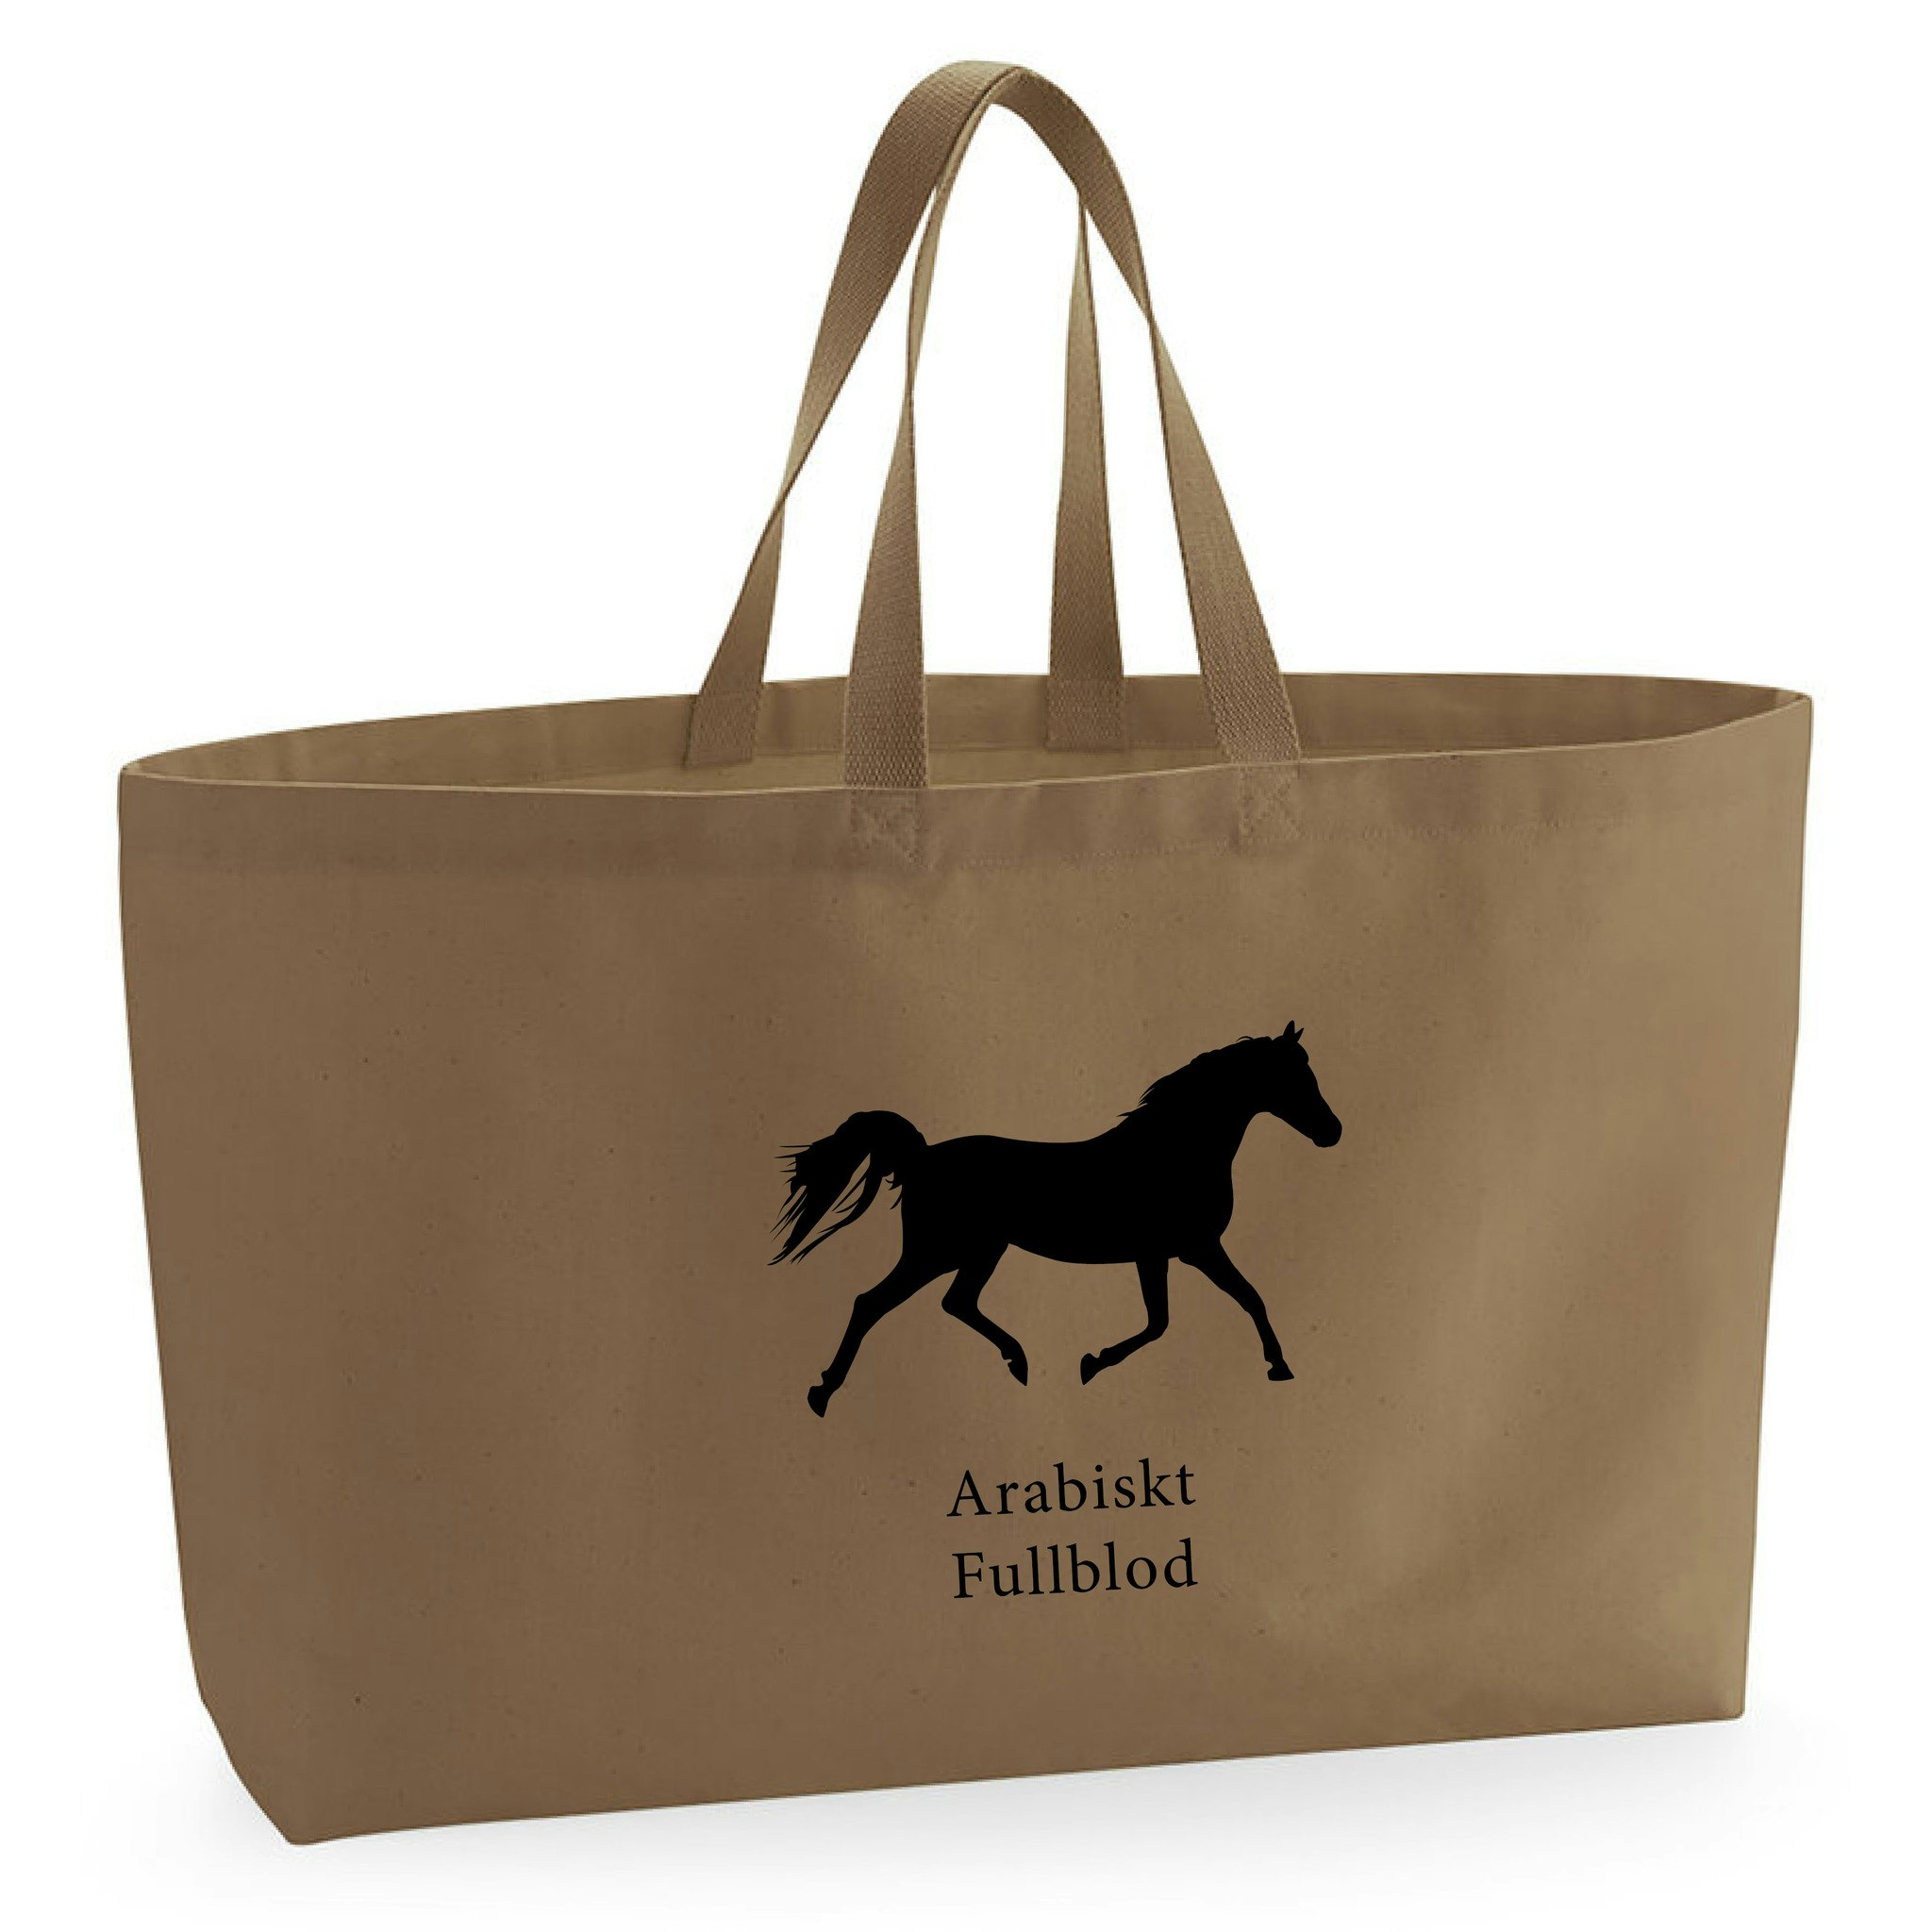 Tygkasse Arabiskt Fullblod - Oversized bag